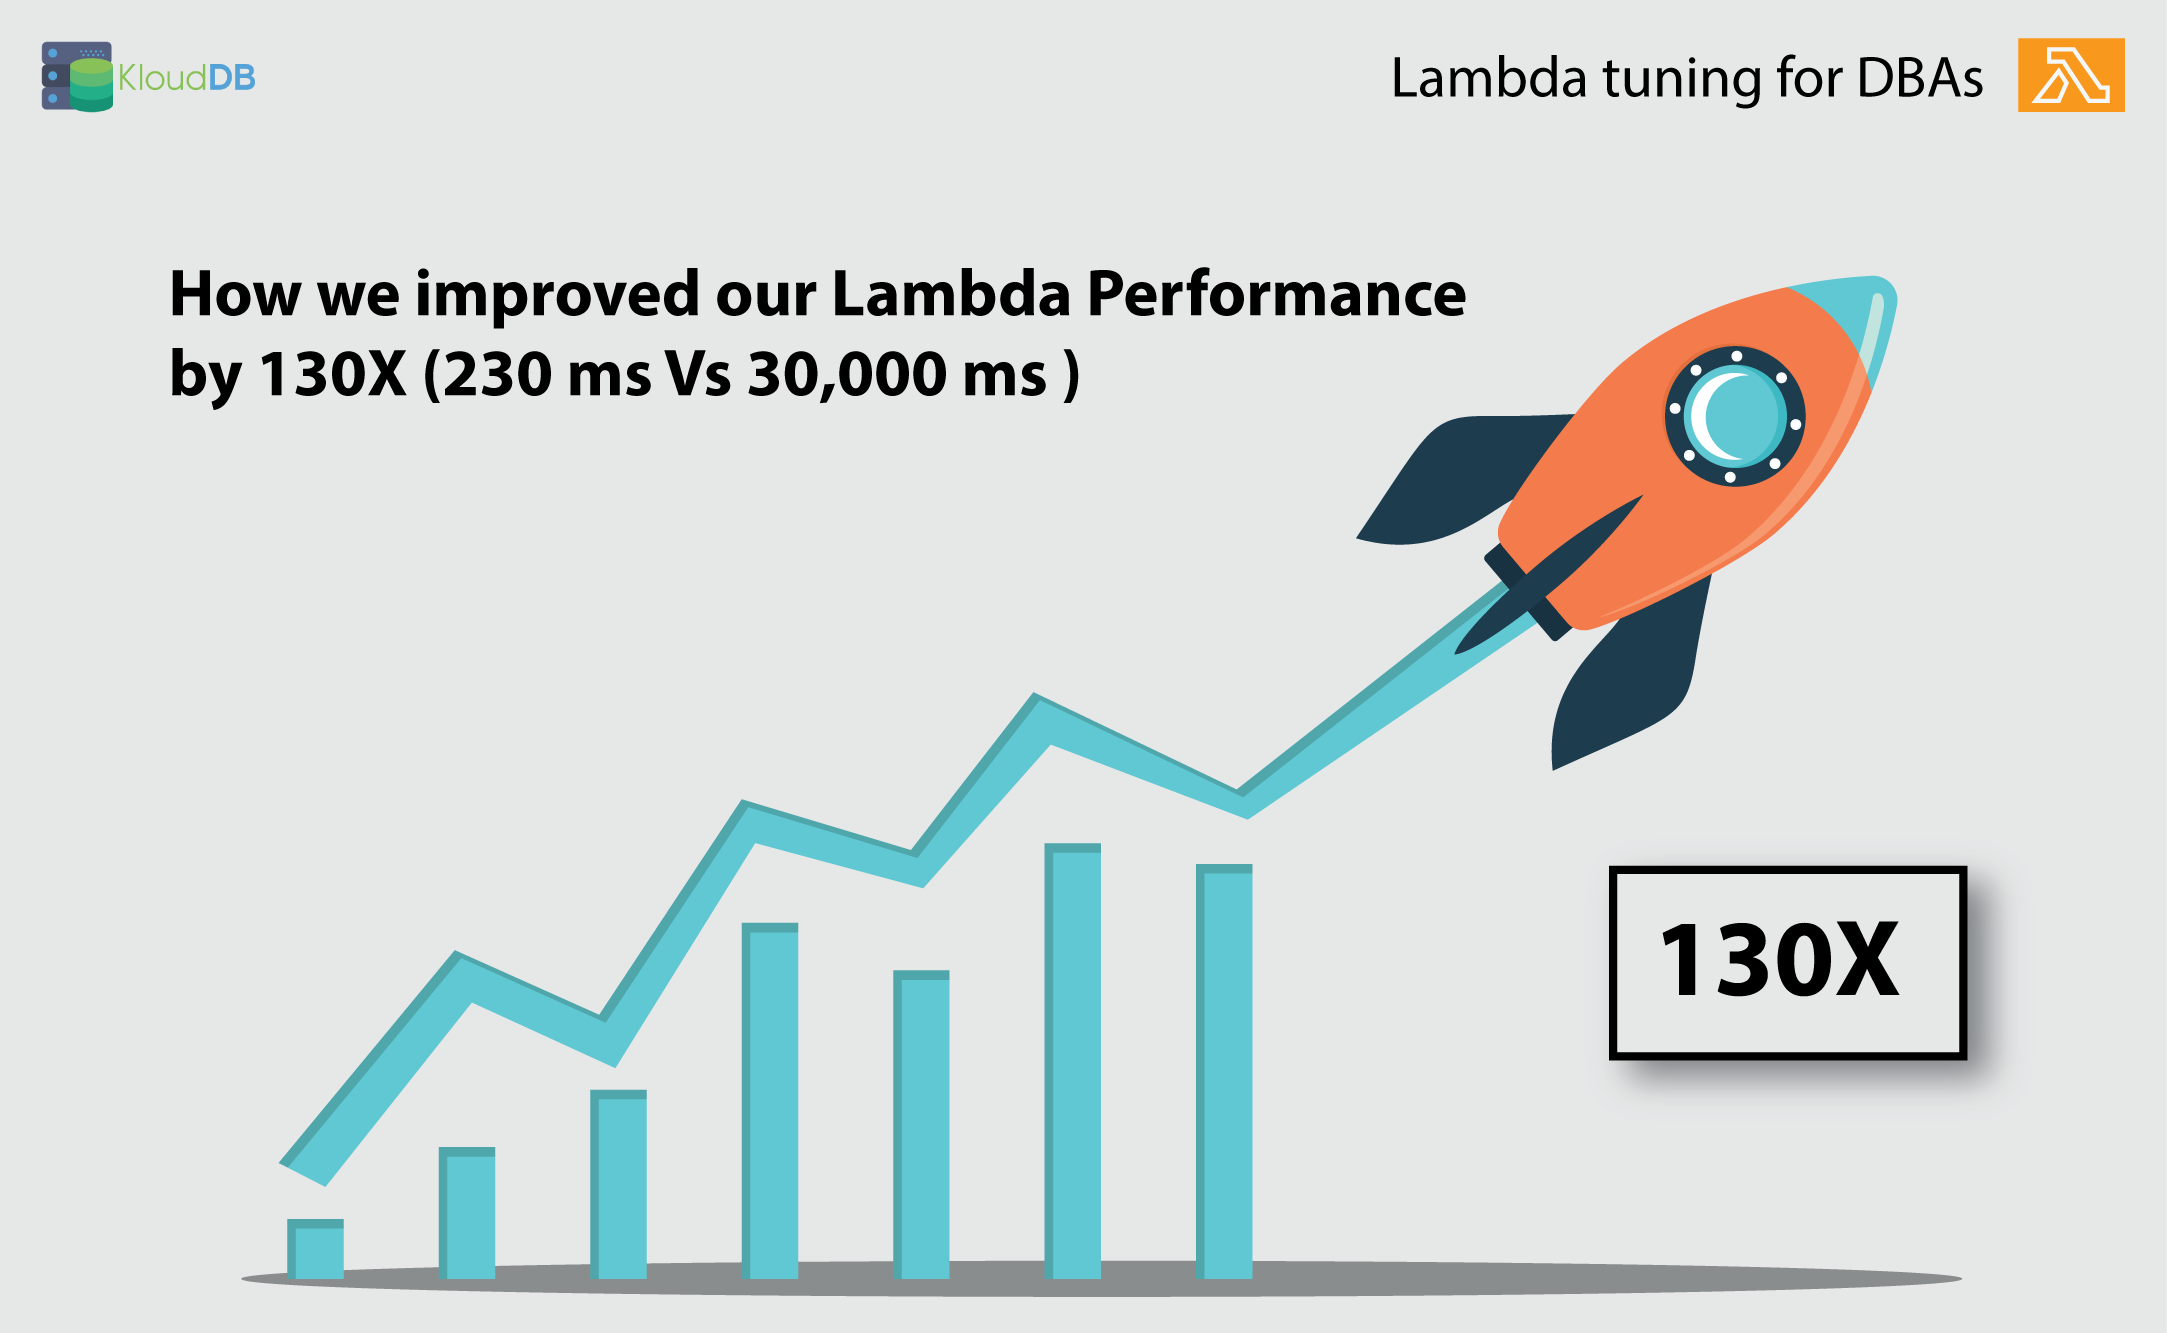 Lambda tuning for DBAs - 130X improvement